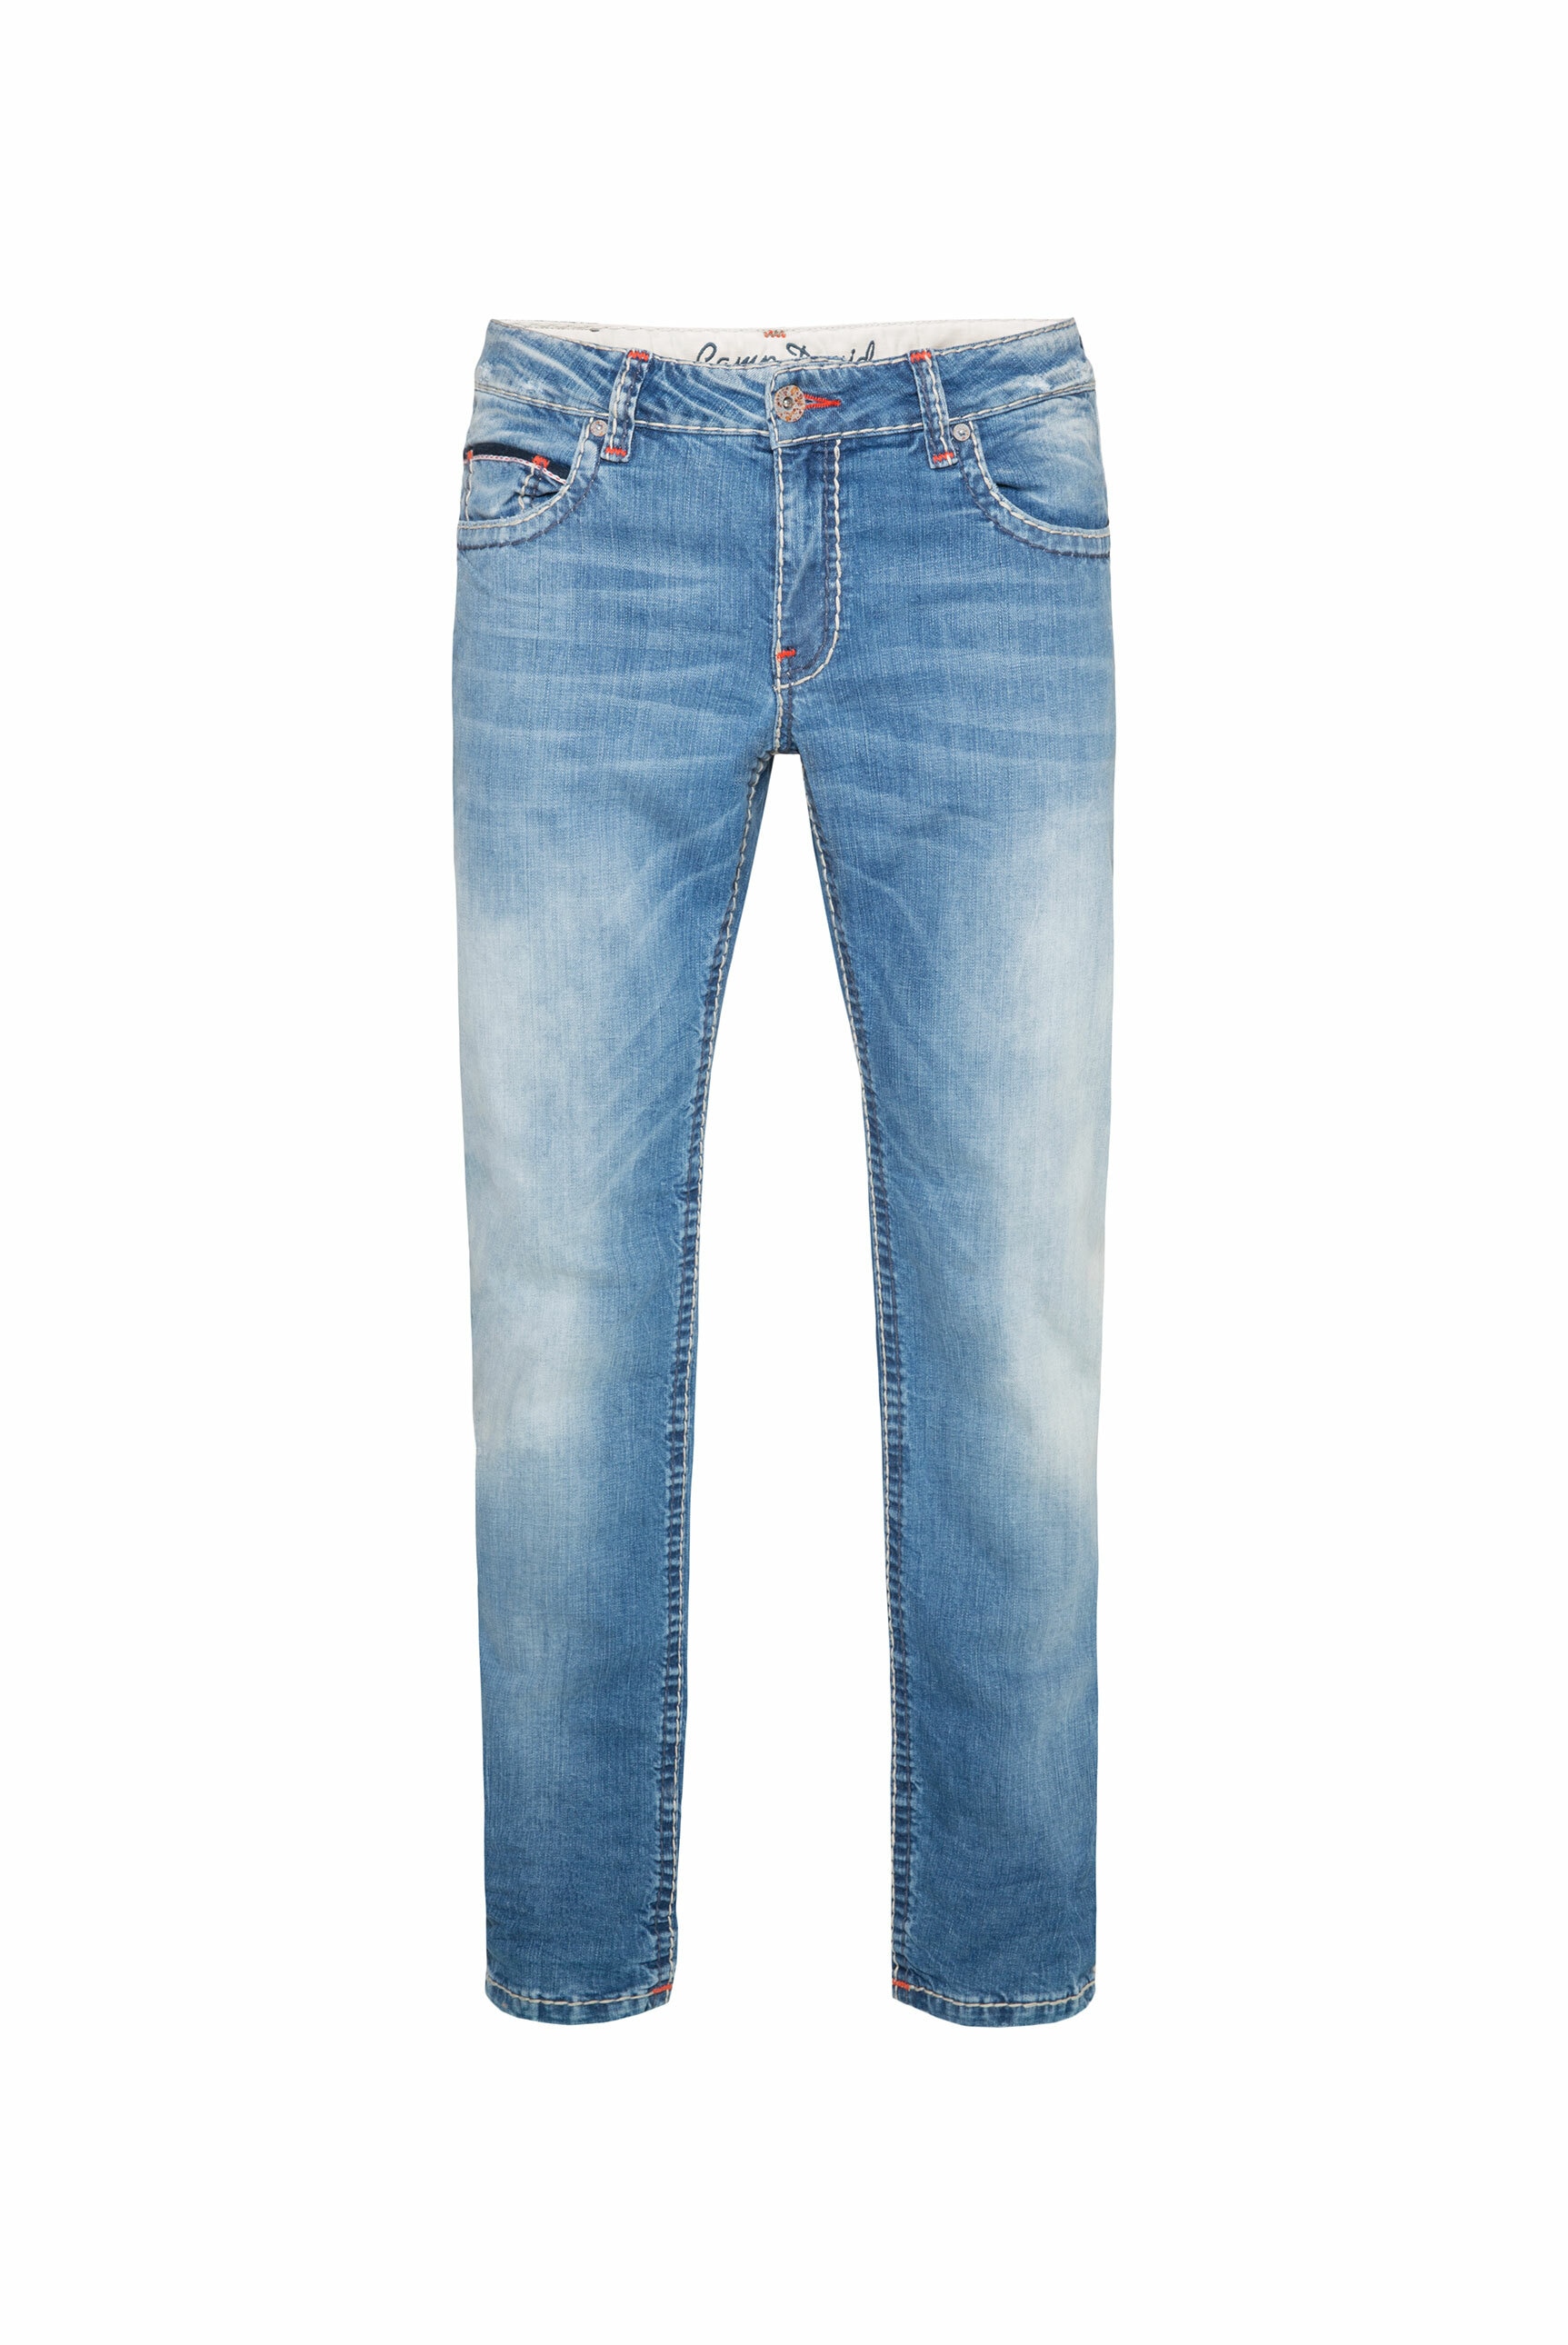 CAMP DAVID Comfort-fit-Jeans, mit Kontrast-Steppungen